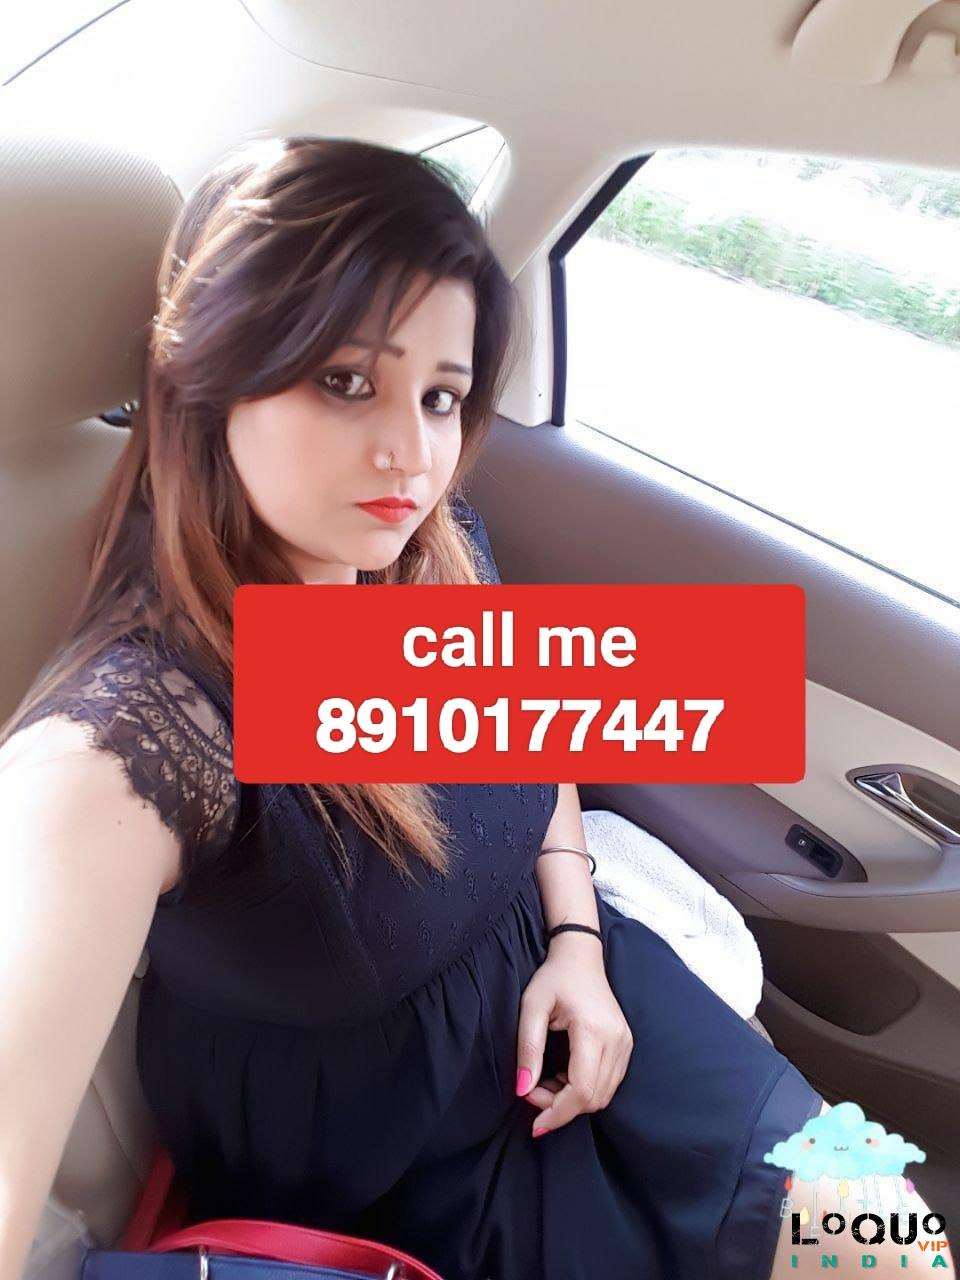 Call Girls Odisha: Bhadrak ❤CALL GIRL 82740*03829 ❤CALL GIRLS IN Bhadrak ESCORT SERVICE❤CALL